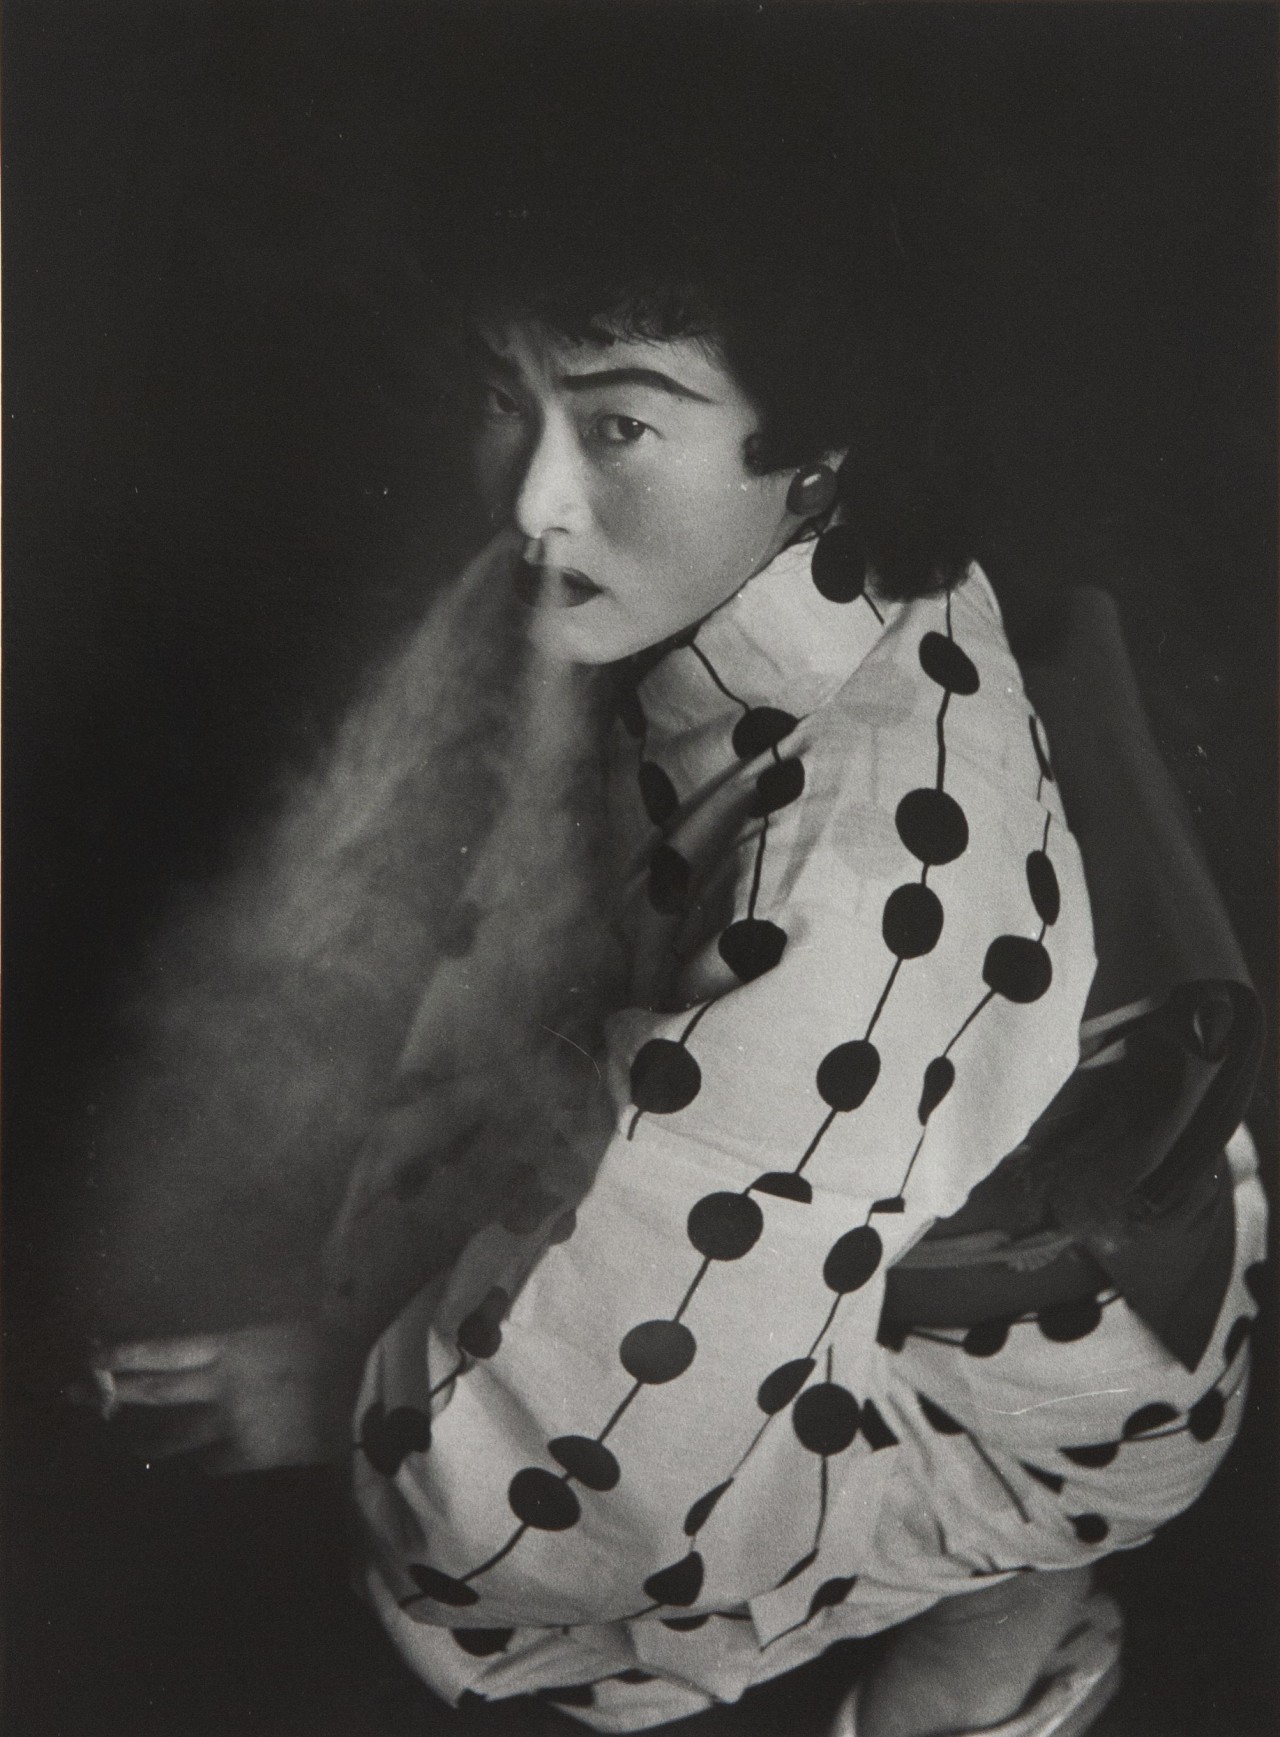 Проститутка, Нагоя, 1957. Фотограф Сёмэй Томацу